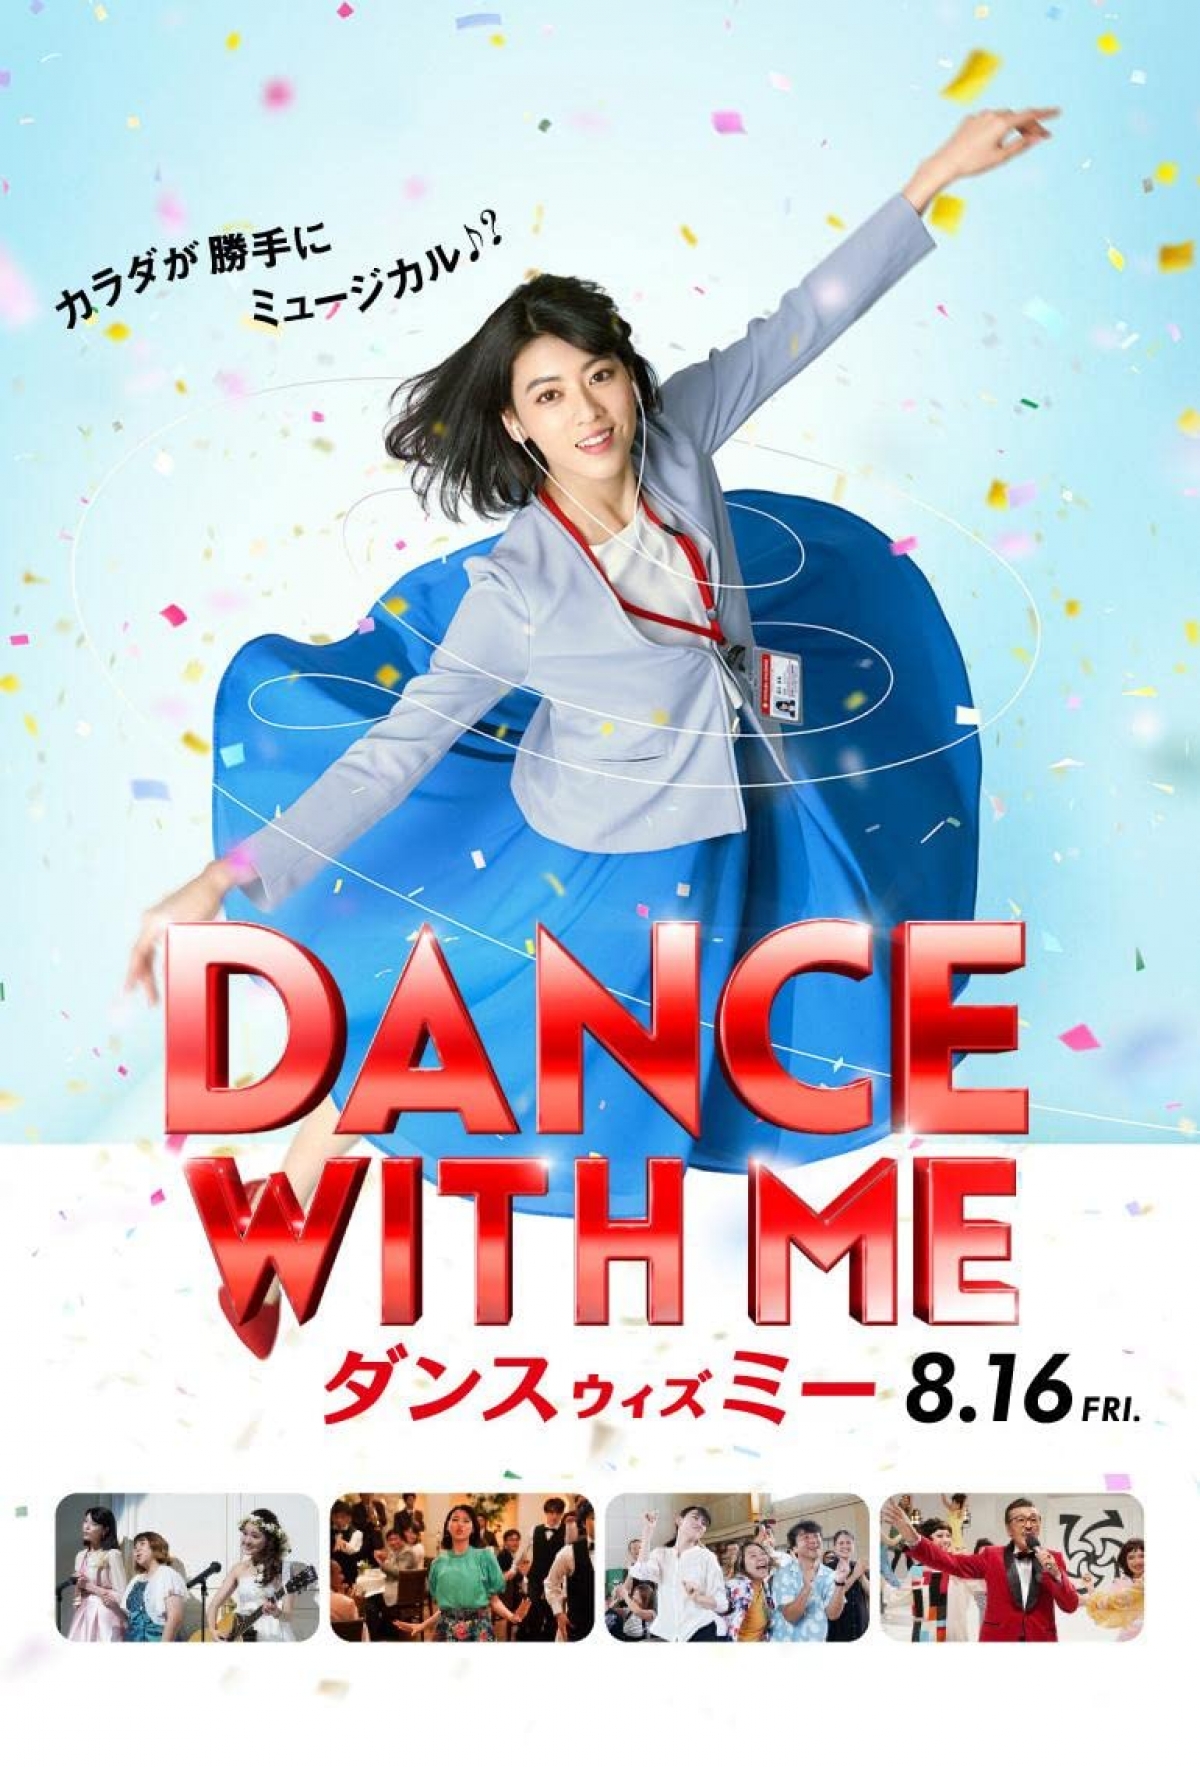  "Dance with me " là bộ phim mở màn JFF Online 